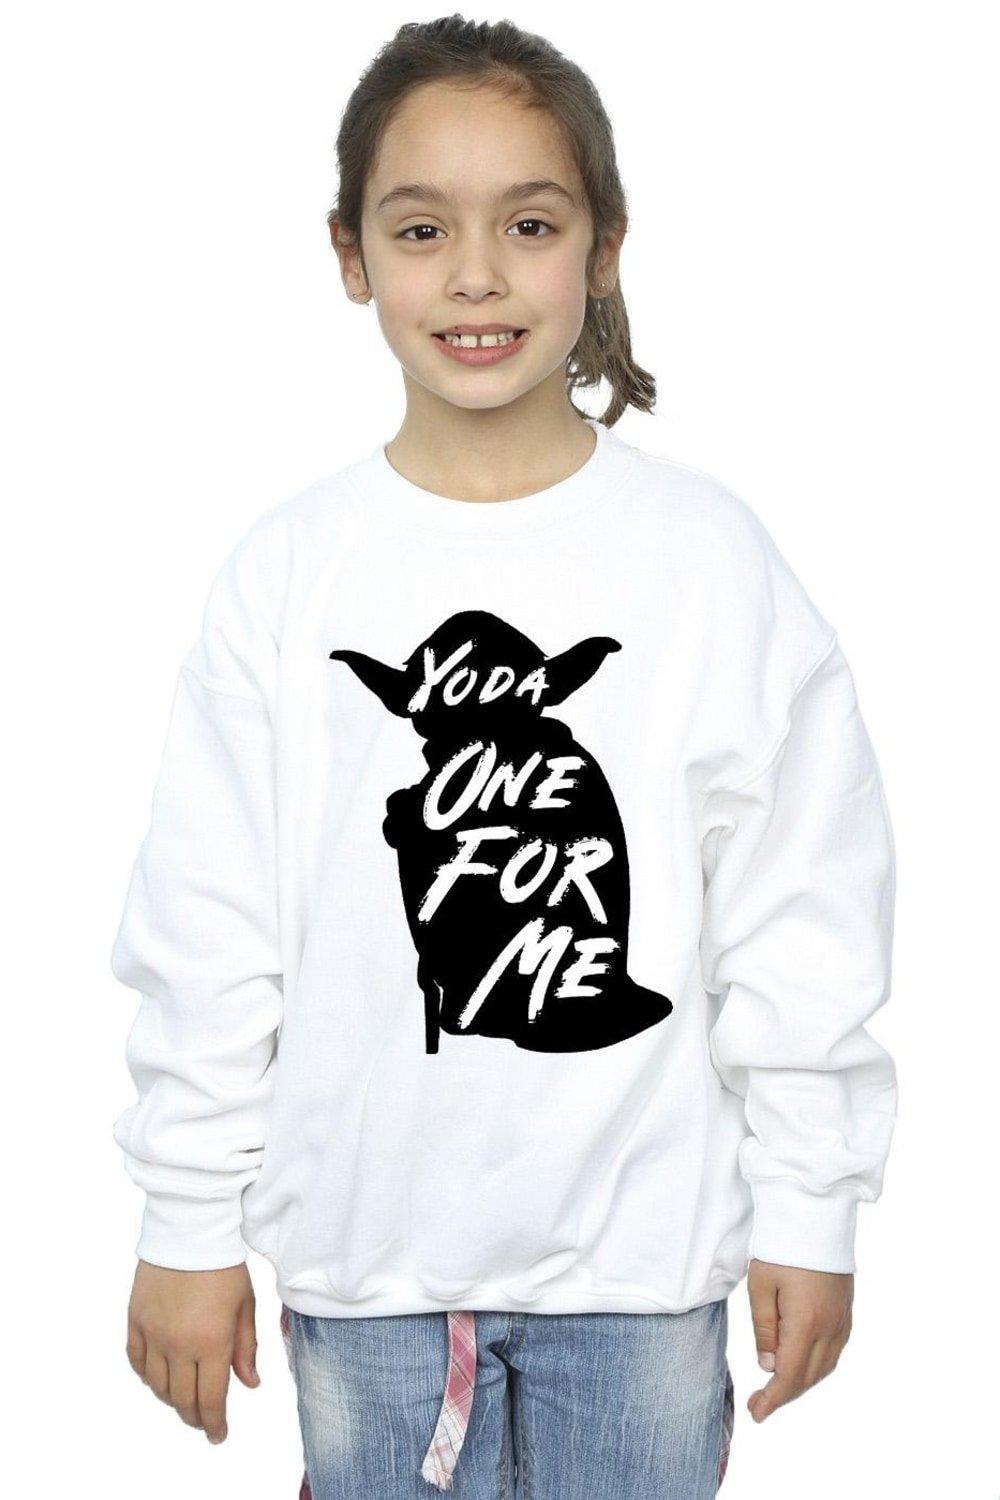 Yoda One For Me Sweatshirt